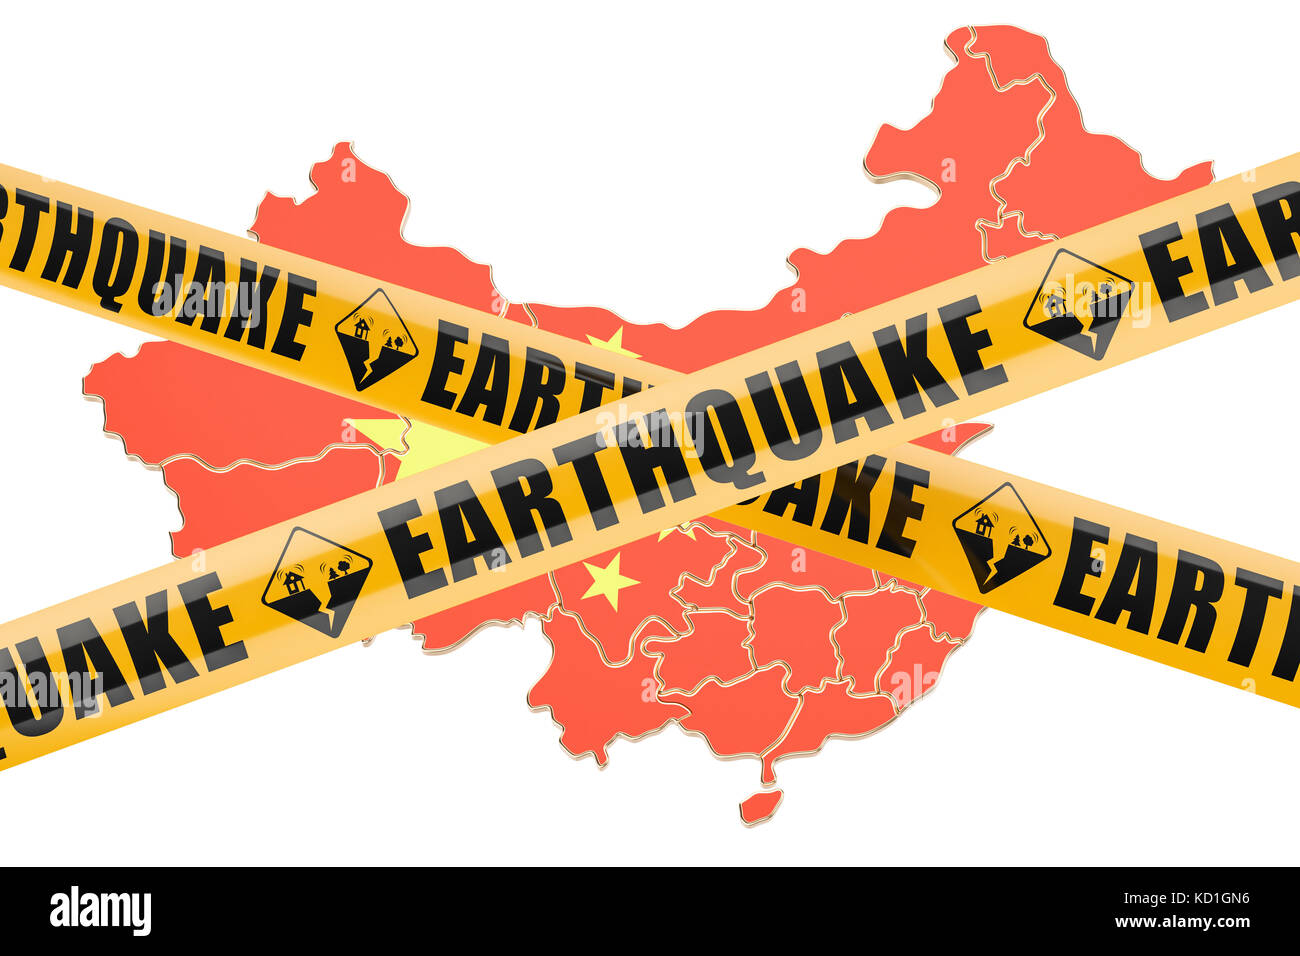 Erdbeben in China Konzept, 3D-Rendering auf weißem Hintergrund Stockfoto